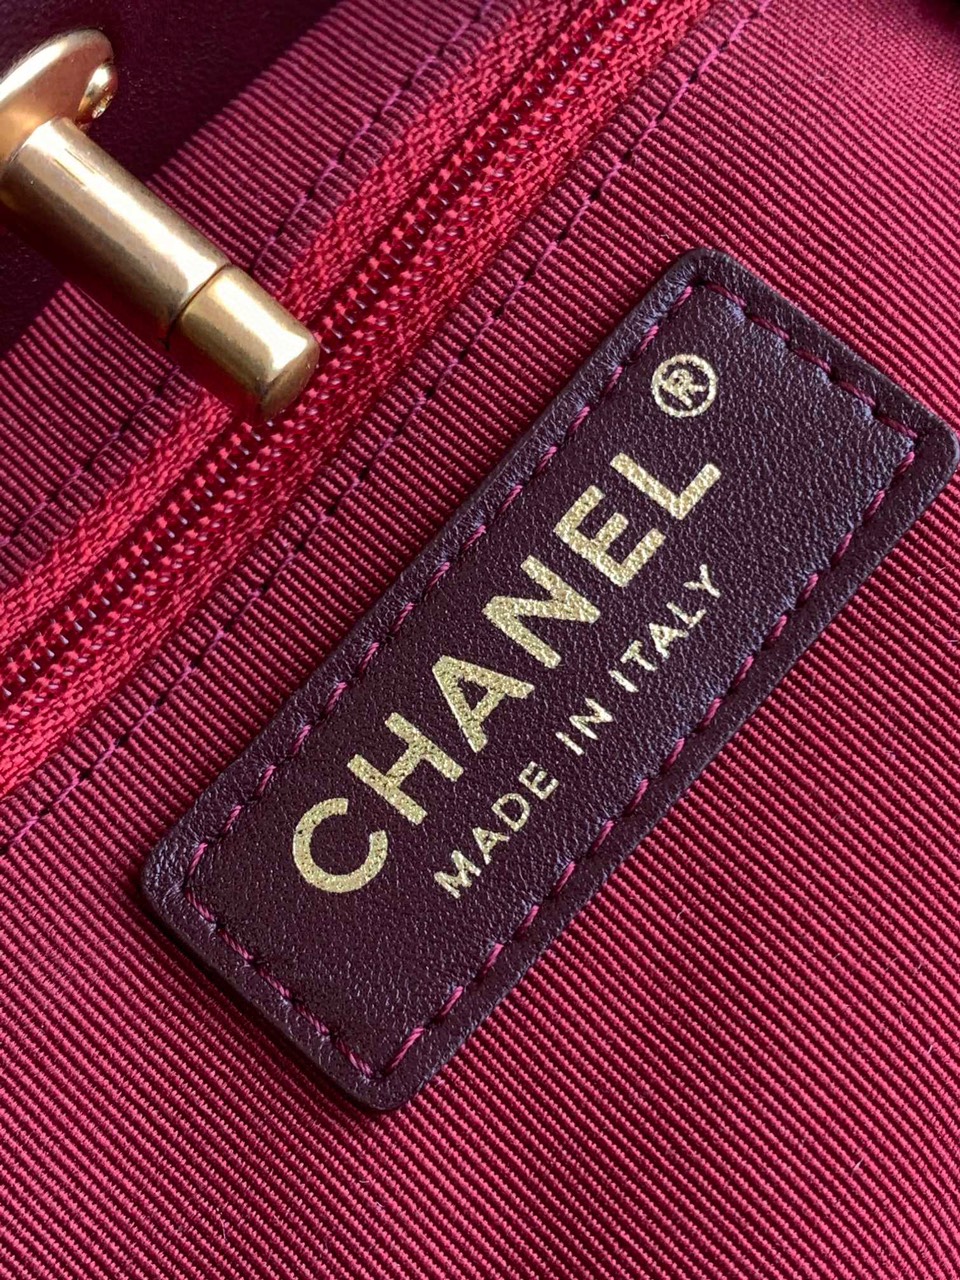 Balo Chanel 23a Advanced Vải Tuýt Siêu Cấp Thổ Cẩm